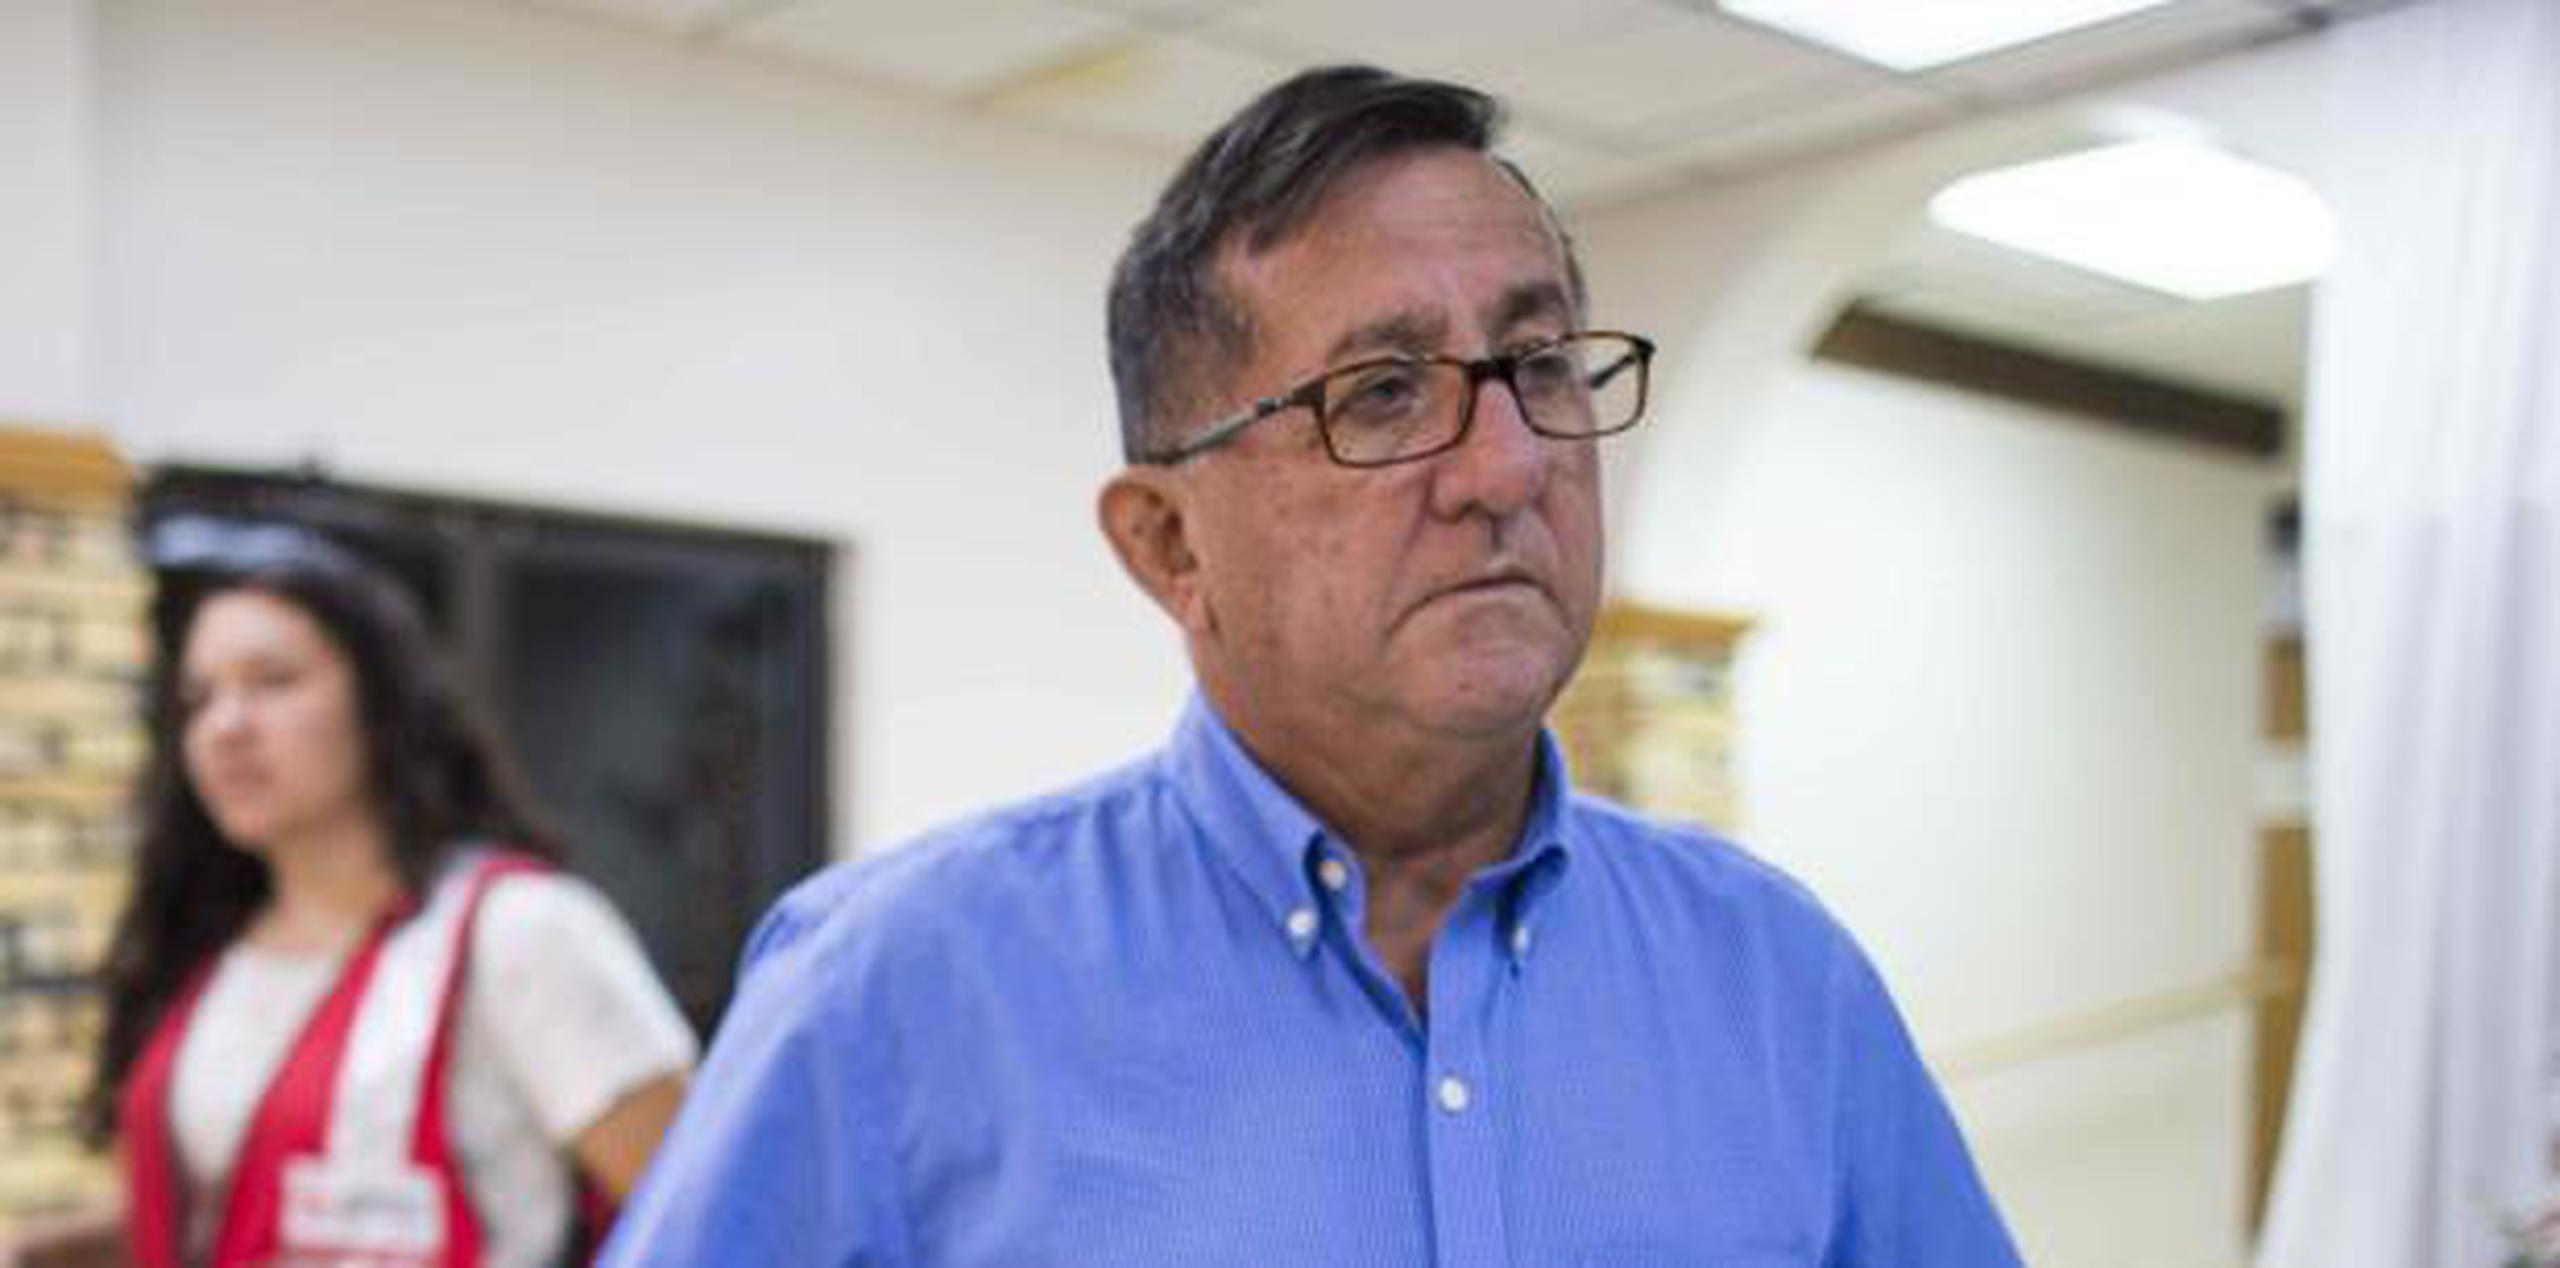 Roberto Pagán Crespo anunció en noviembre su renuncia a la alcaldía de Lares y promovía que fuera su hijo quien lo sustituyera. (Archivo)